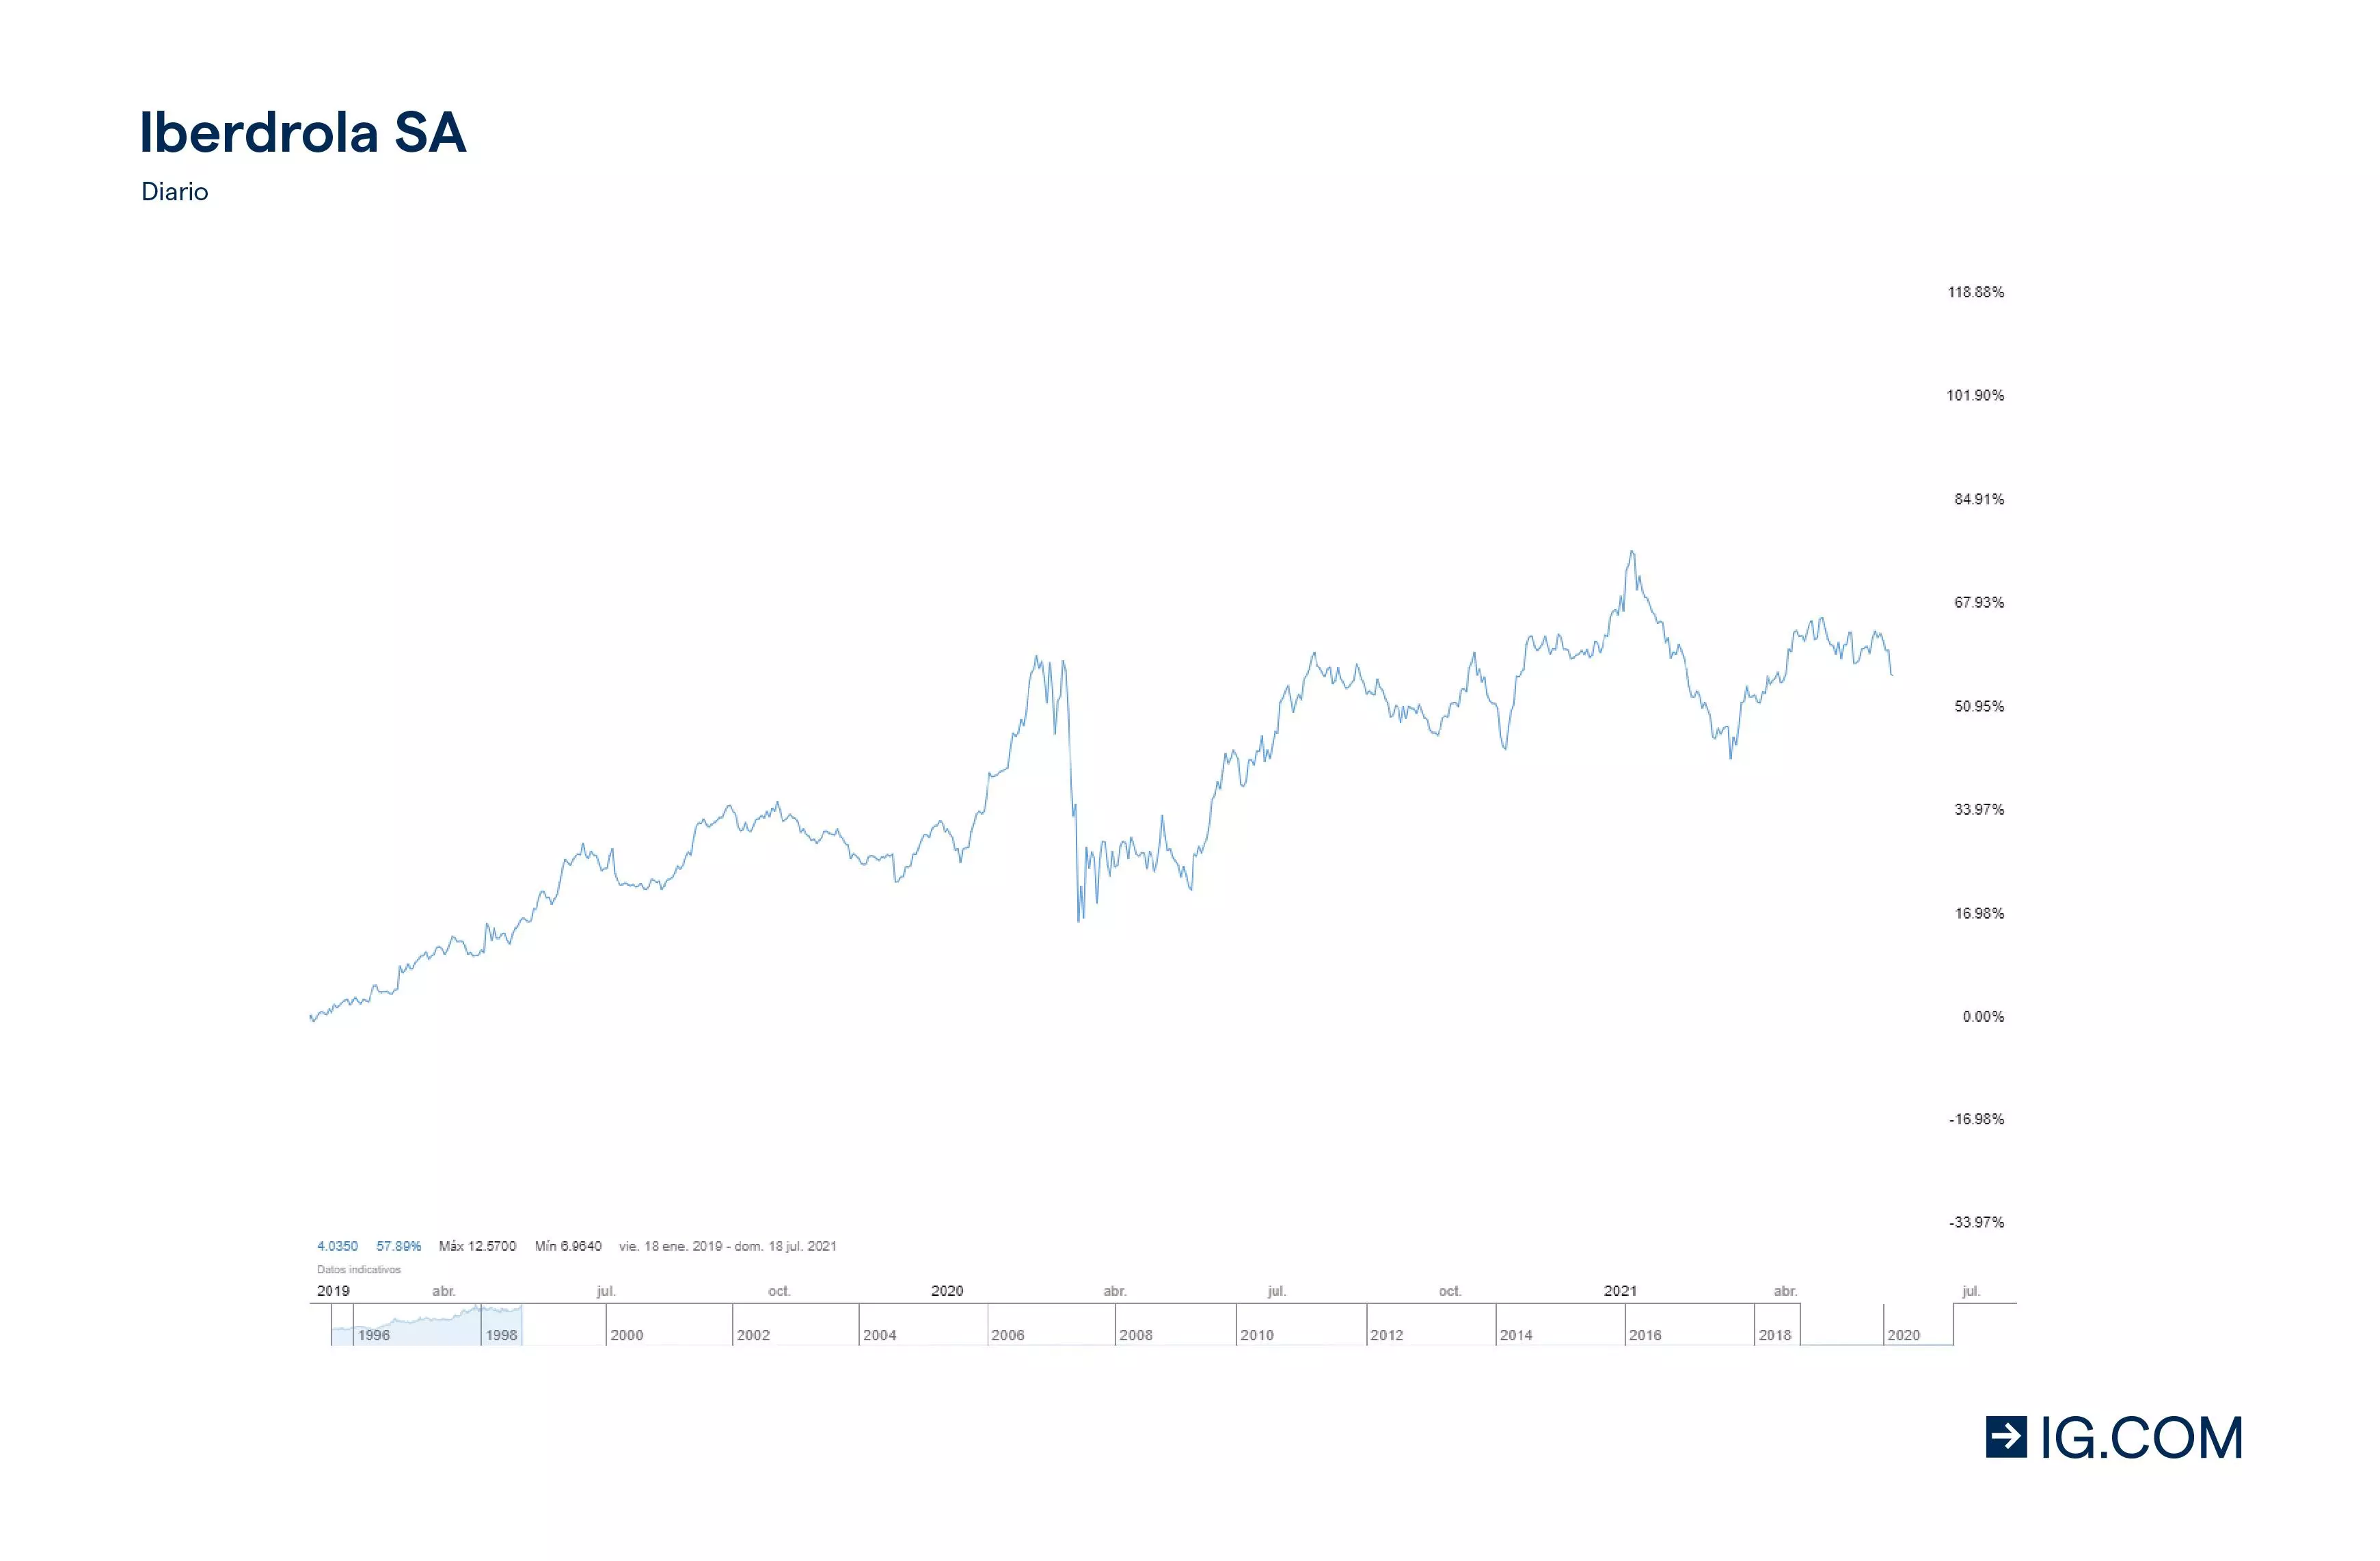 Gráfico de precios Iberdrola